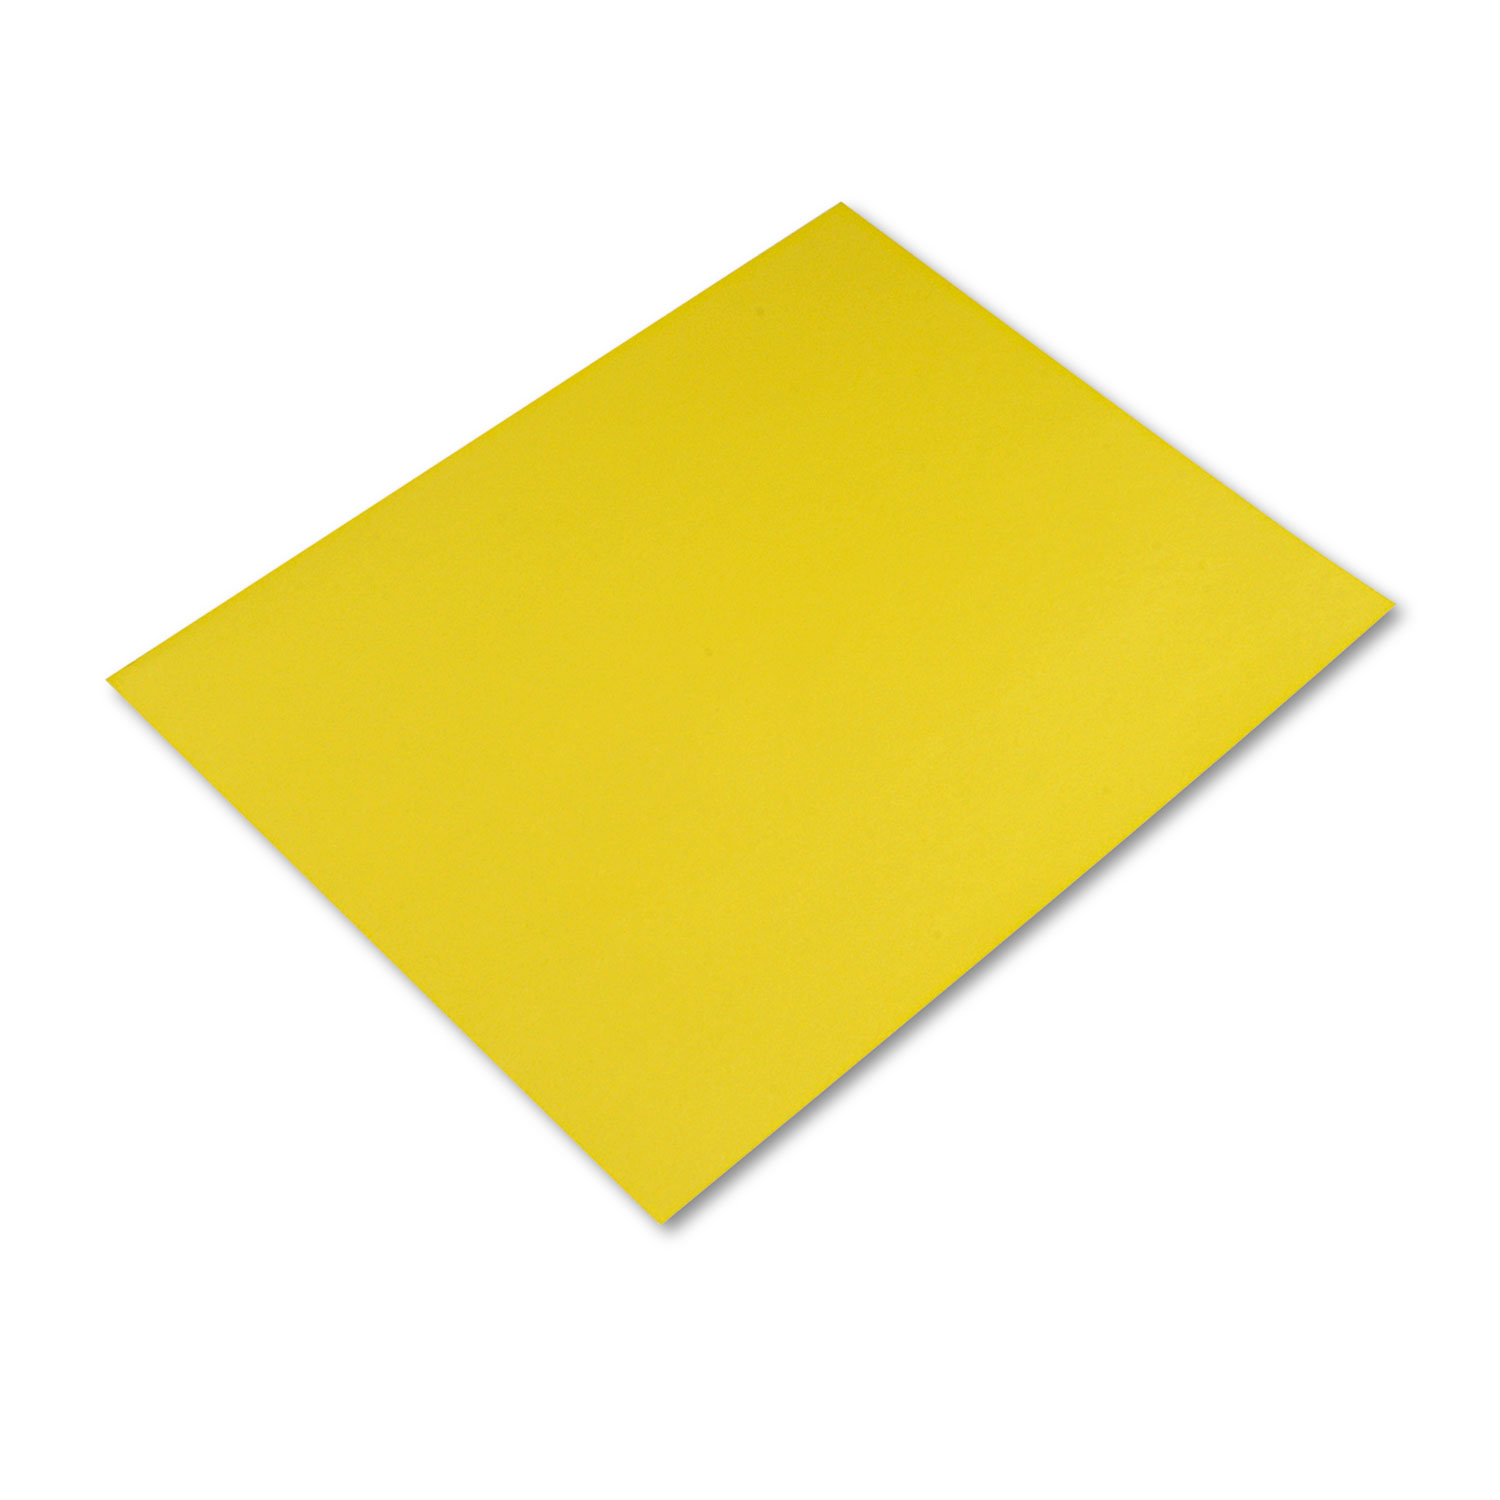 Four-Ply Railroad Board, 22 x 28, Lemon Yellow, 25/Carton